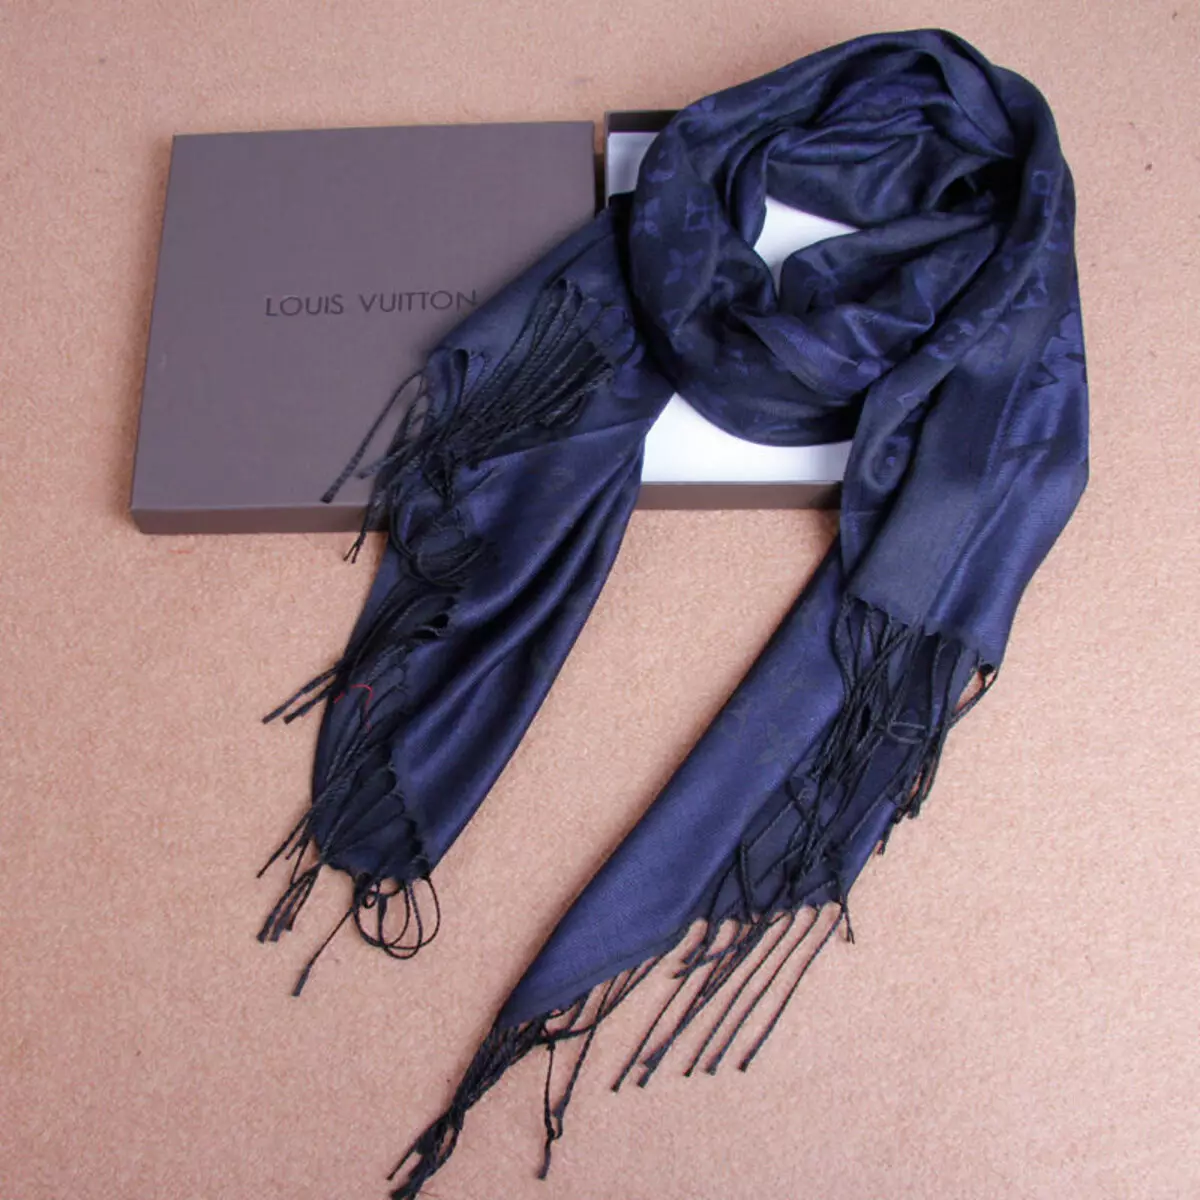 ایک منک کوٹ کے لئے سکارف (47 فوٹو): ایک بھوری فر کوٹ کے ساتھ ایک سکارف پہننا، جو مناسب، کس طرح باندھا 2906_23